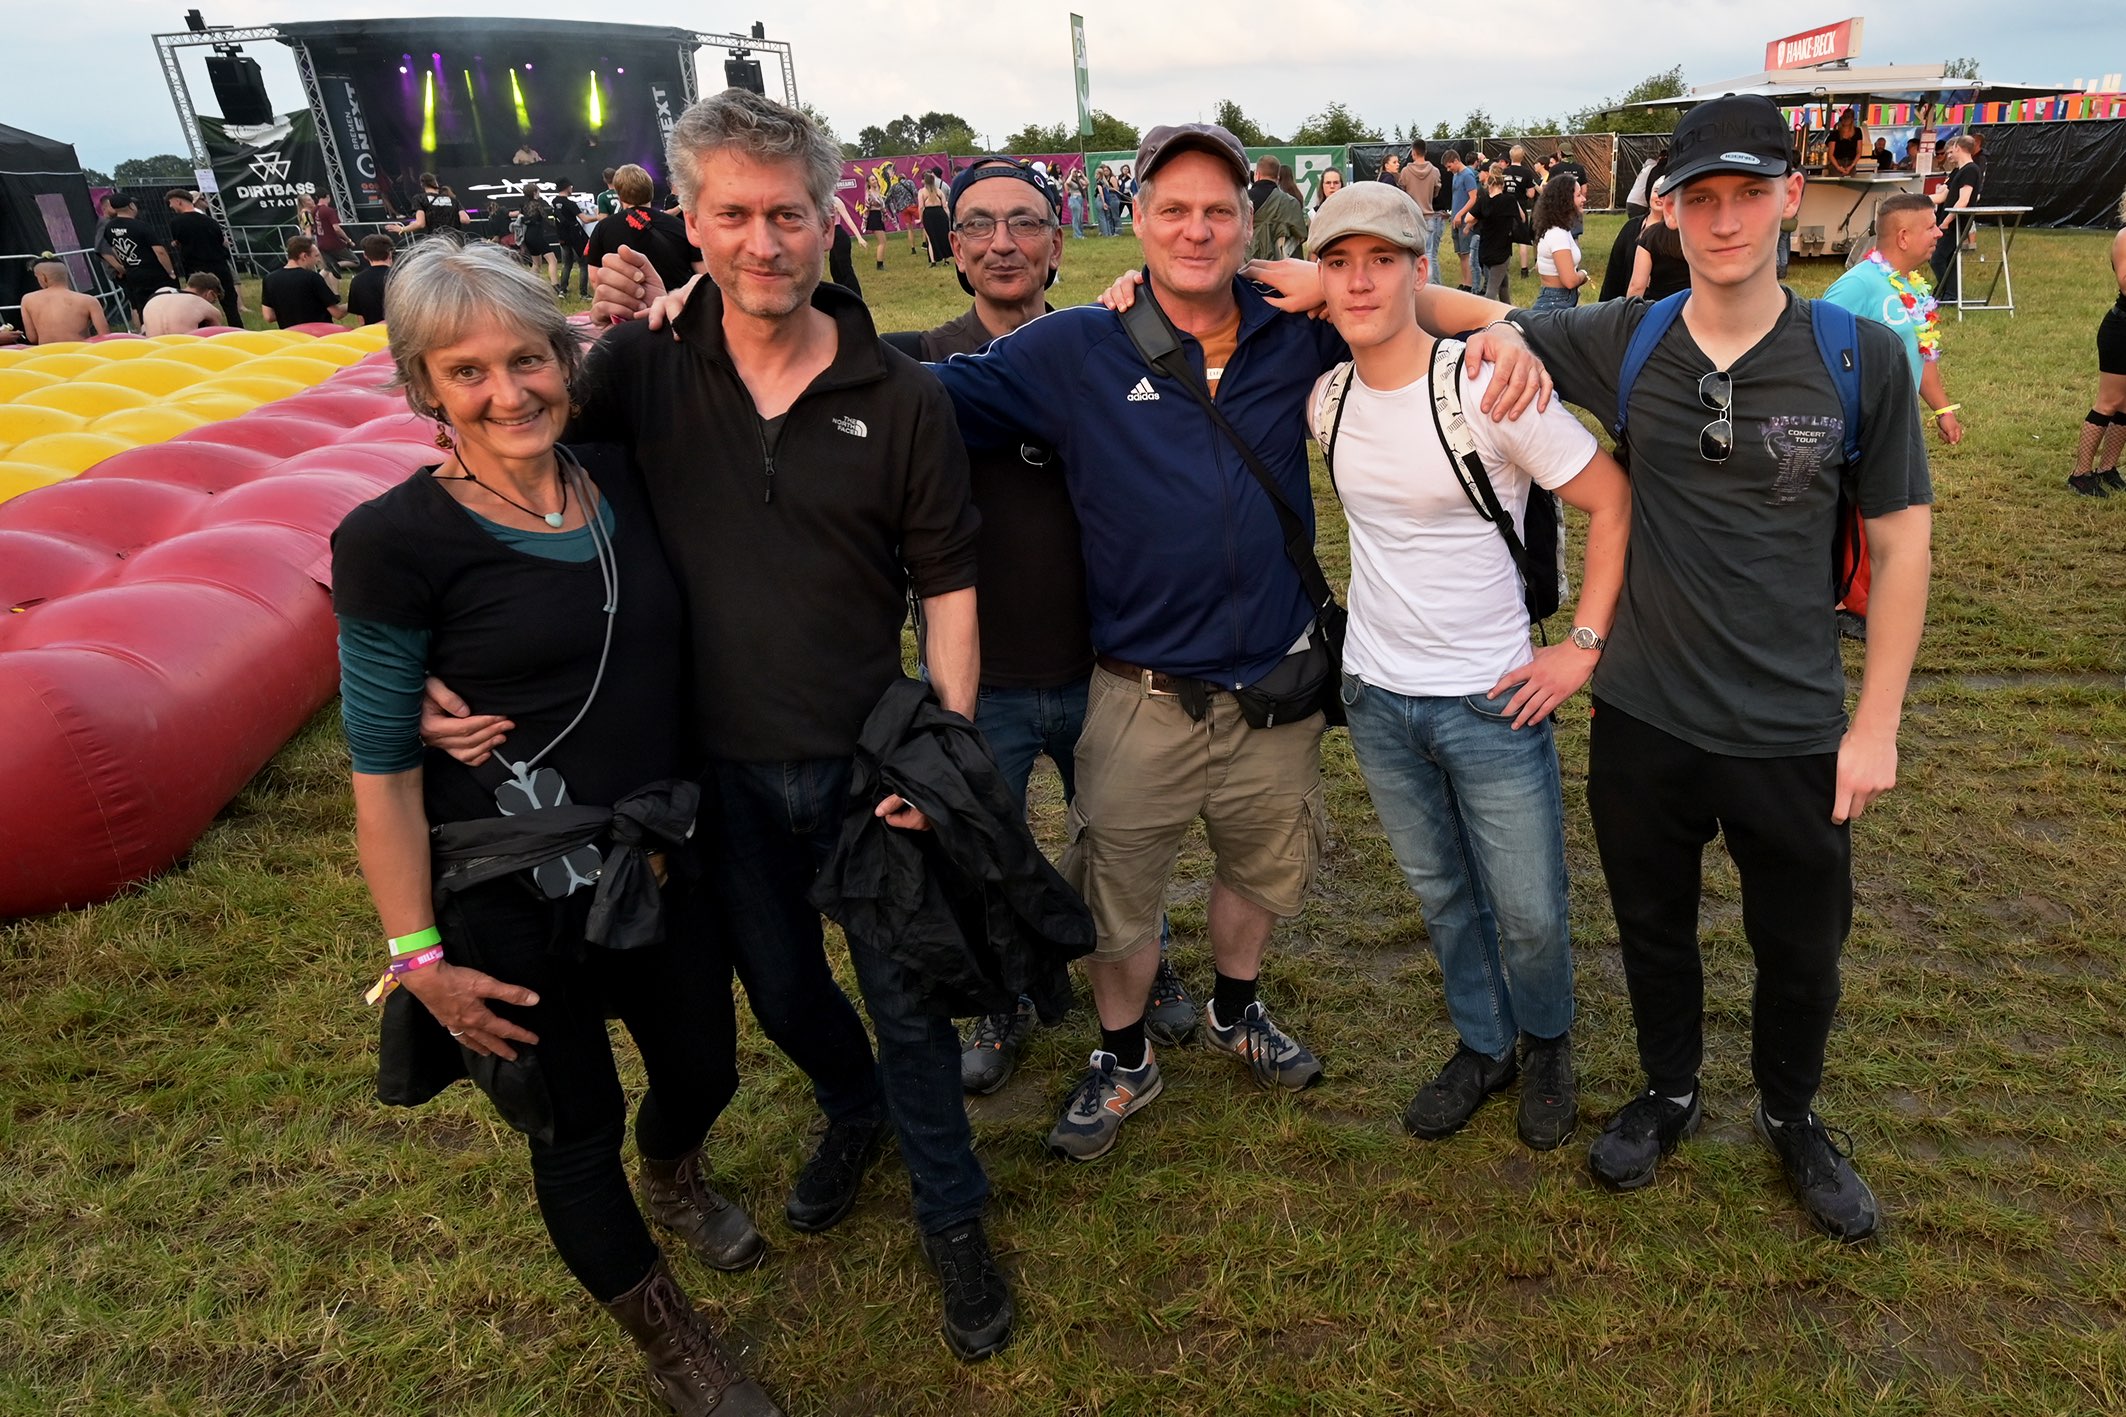 Isa, Martin, Kosta, Jens, Max und Phil feierten den 55. Geburtstag von Jens auf dem Hill of Dreams Festival.